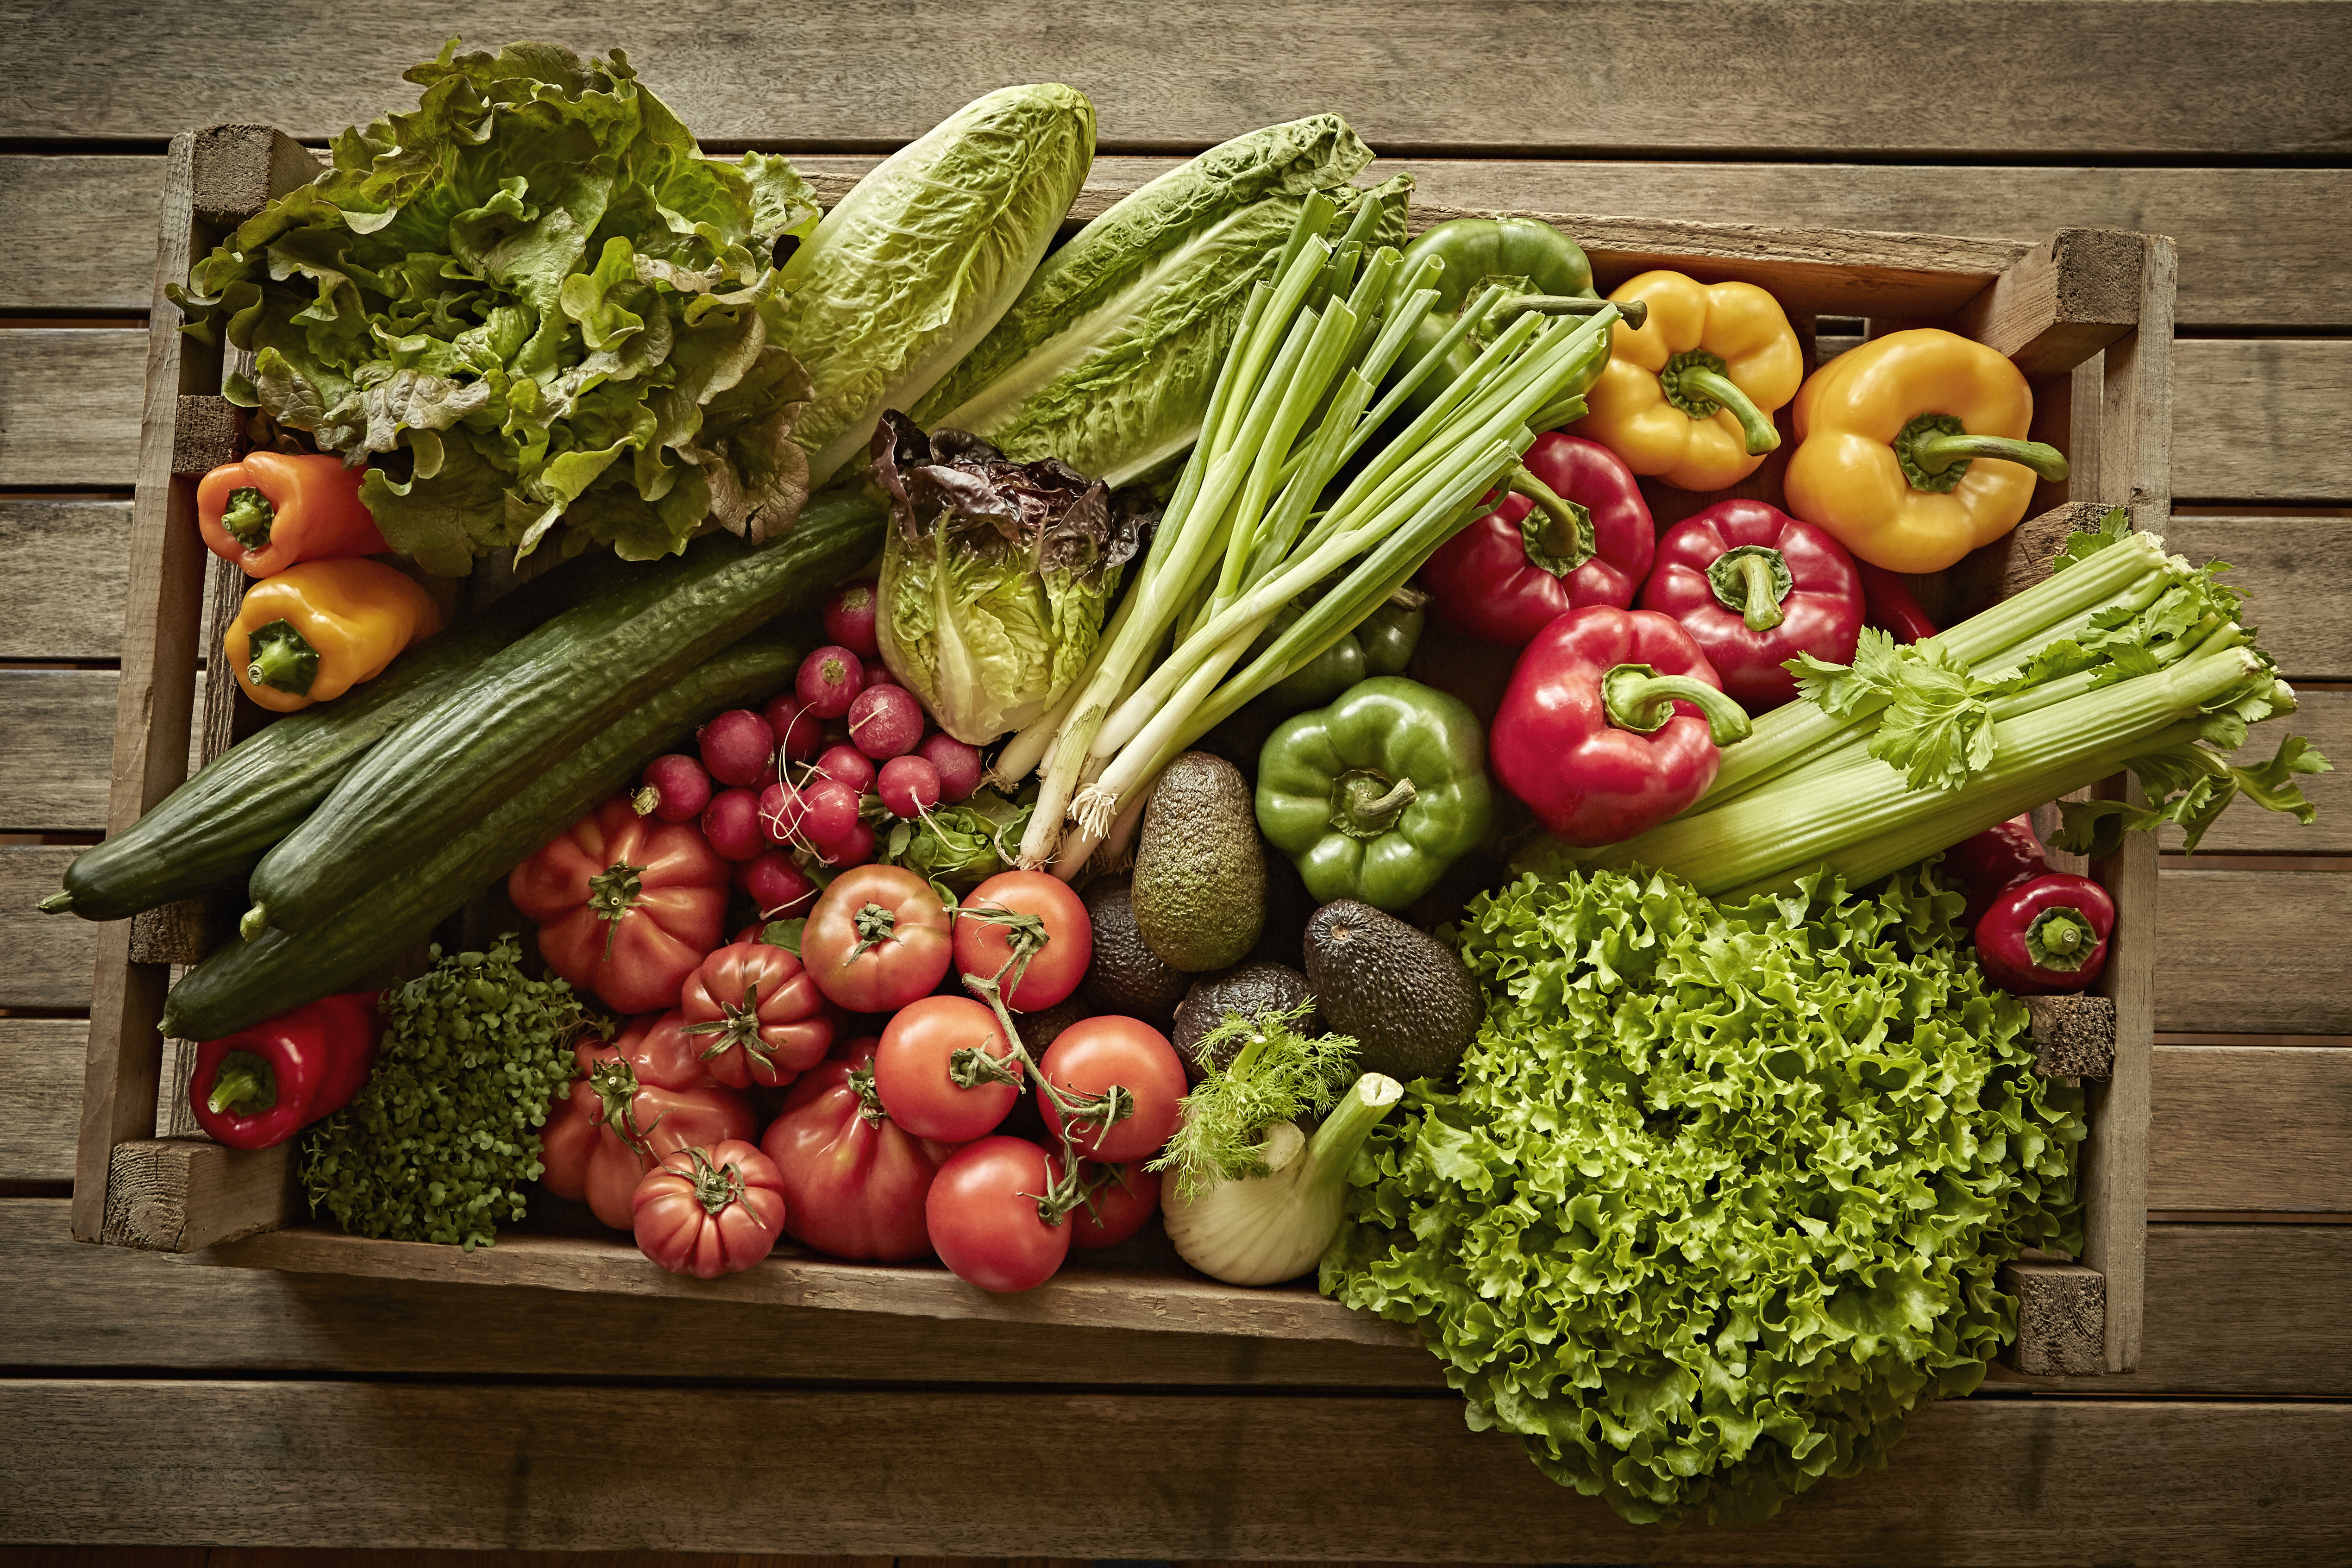 Masih hidup, berbagai panen sayuran segar, organik dan sehat dalam kotak kayu